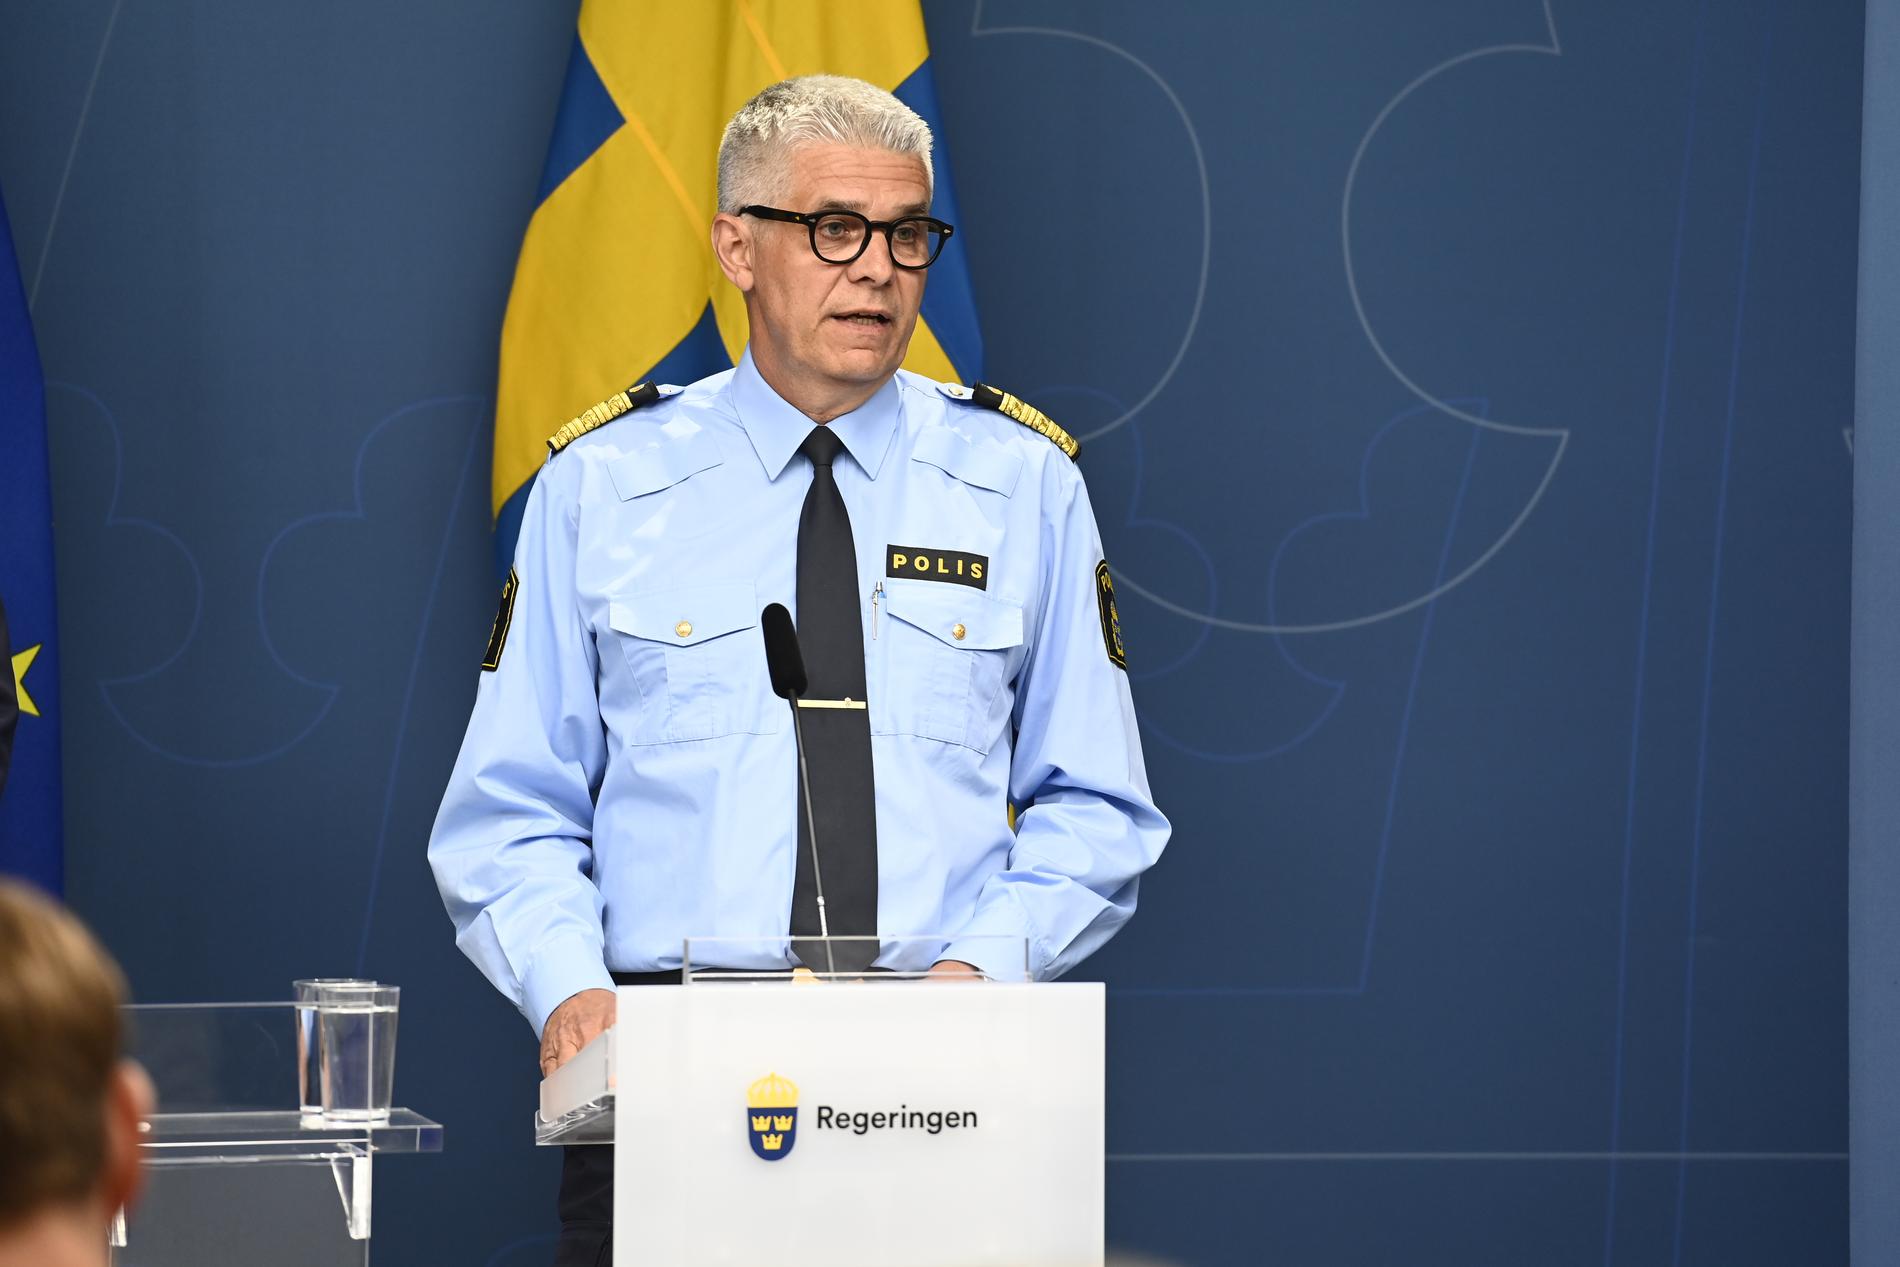 ”I bland kanske man inte ser de åtgärderna vi gör, men vi är på tårna nu”, säger rikspolischefen Anders Thornberg.